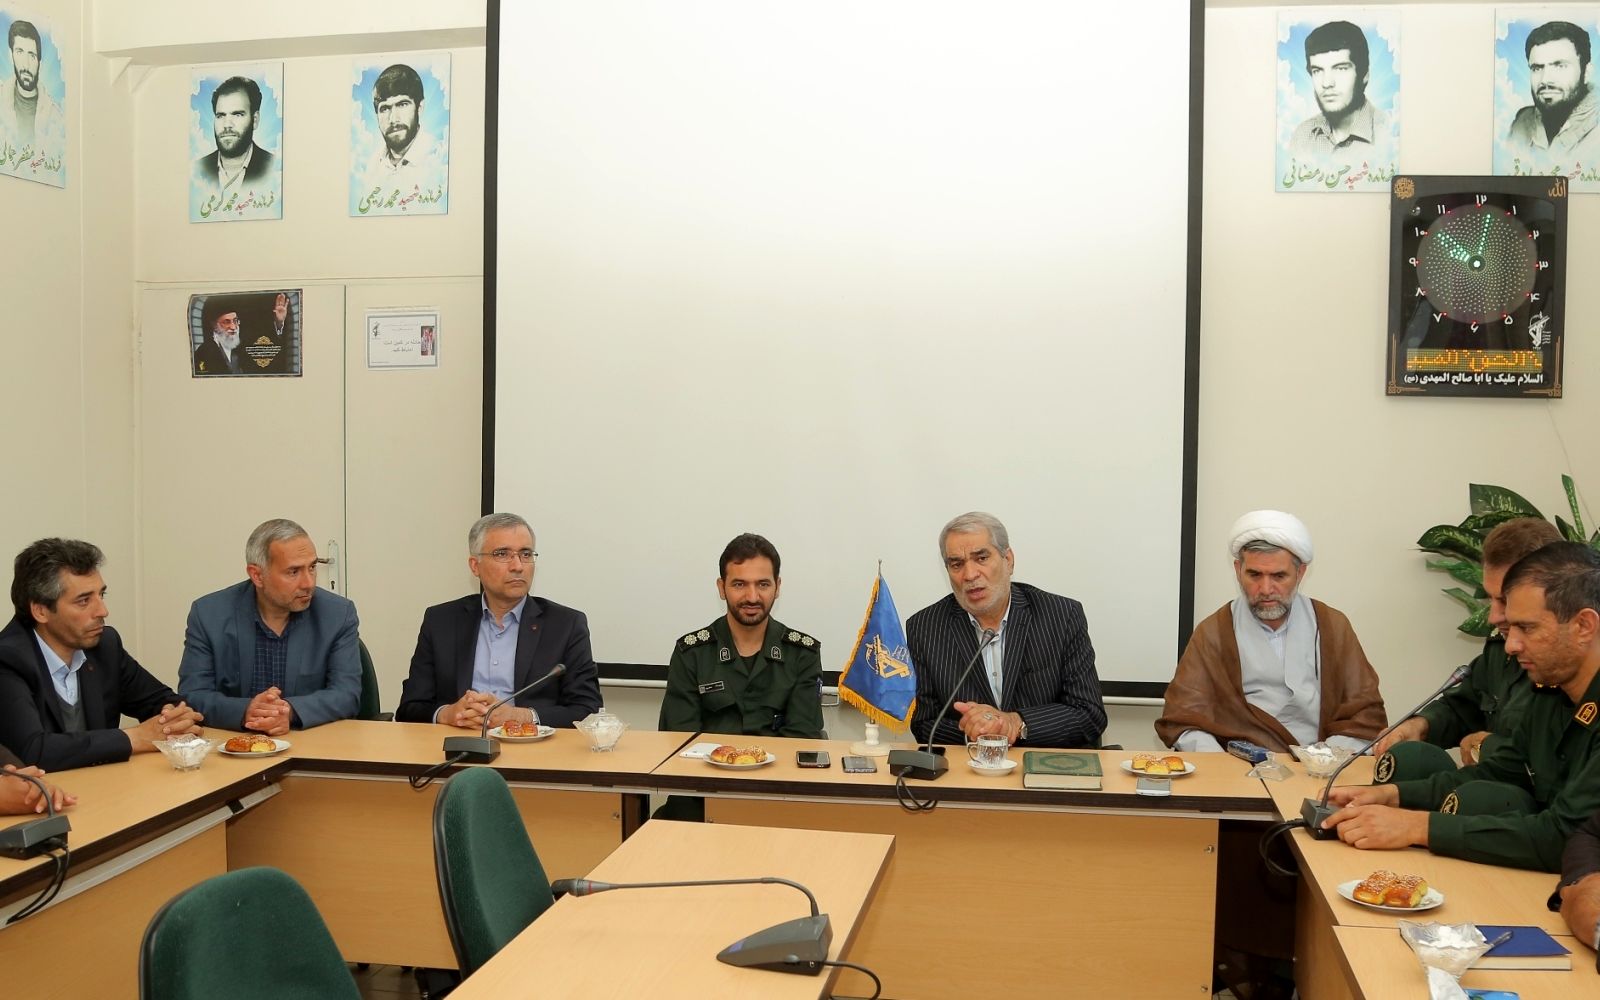 ذوب آهن اصفهان به مسئولیت های اجتماعی خود عمل می کند